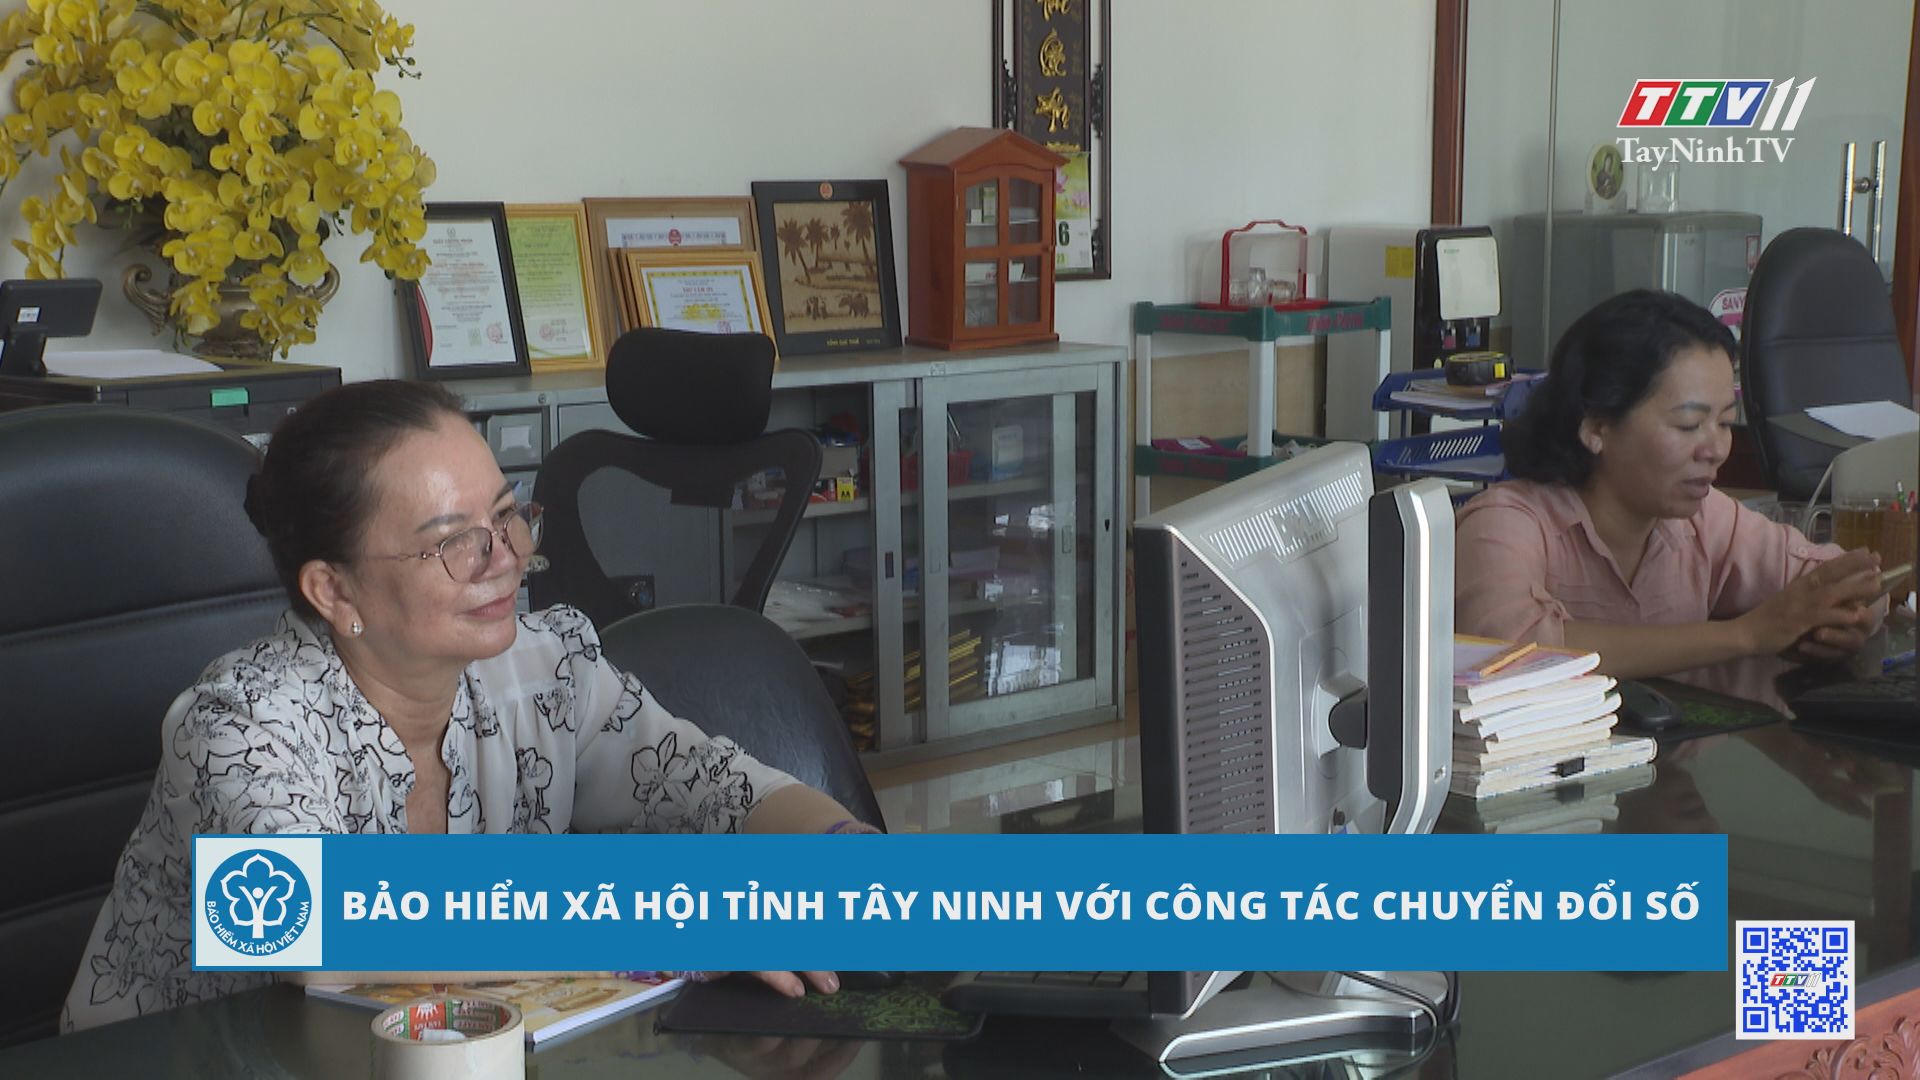 Bảo hiểm xã hội tỉnh Tây Ninh với công tác chuyển đổi số | TayNinhTV